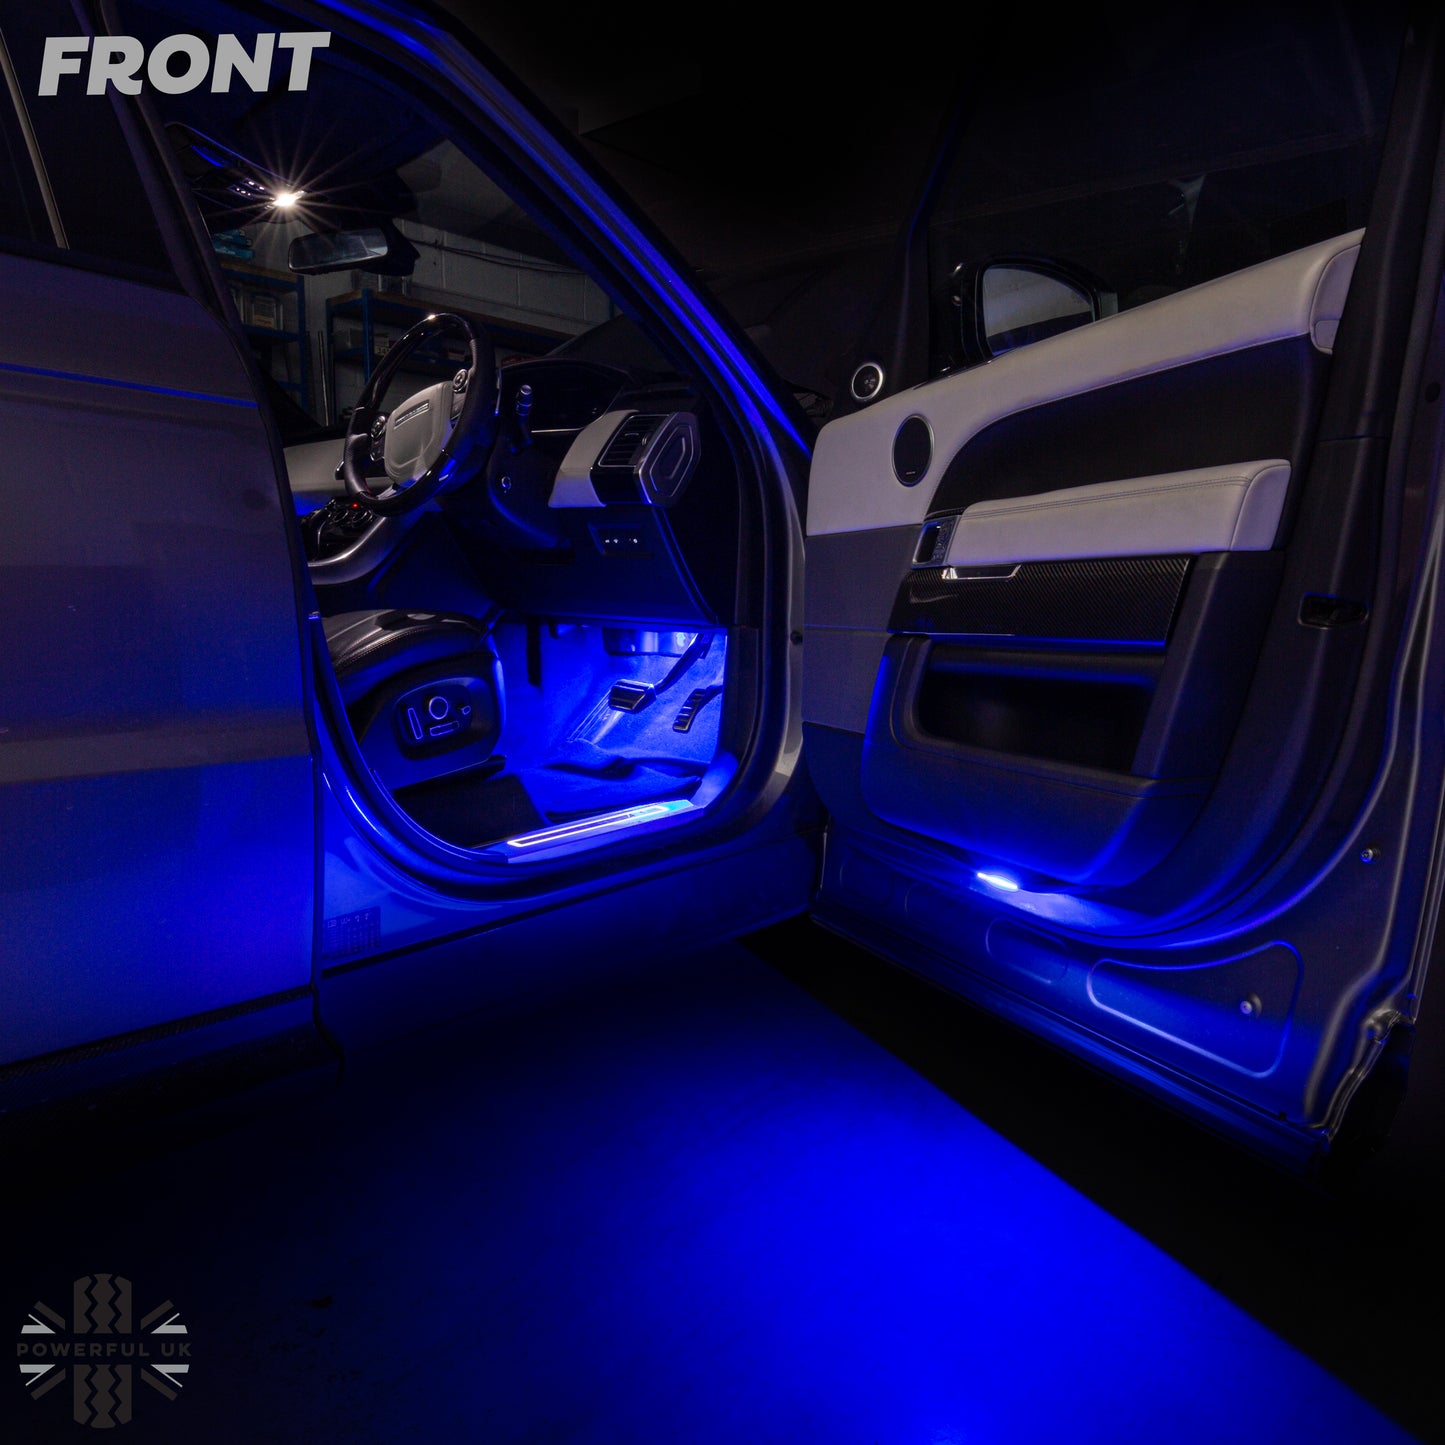 LED Interior Light kit in White & Blue for Range Rover L405